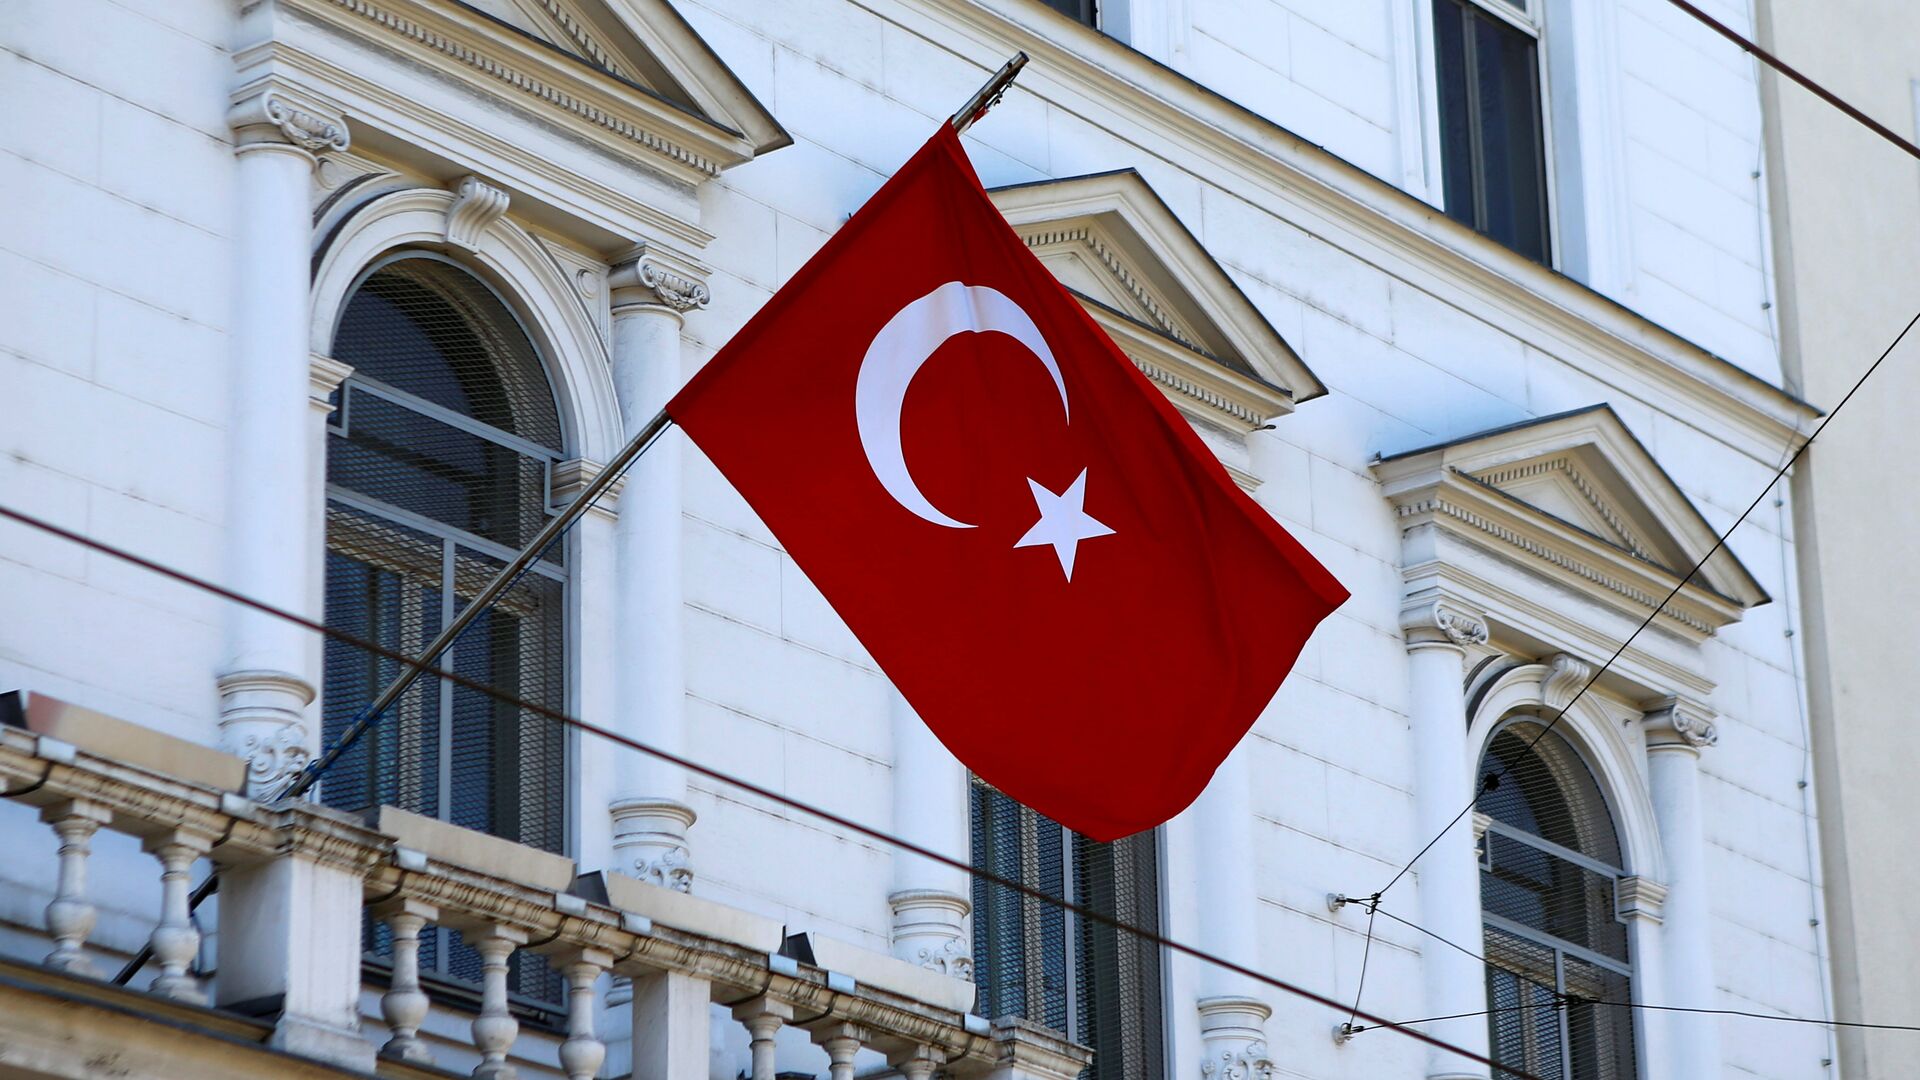 La bandera de Turquía - Sputnik Mundo, 1920, 23.12.2021